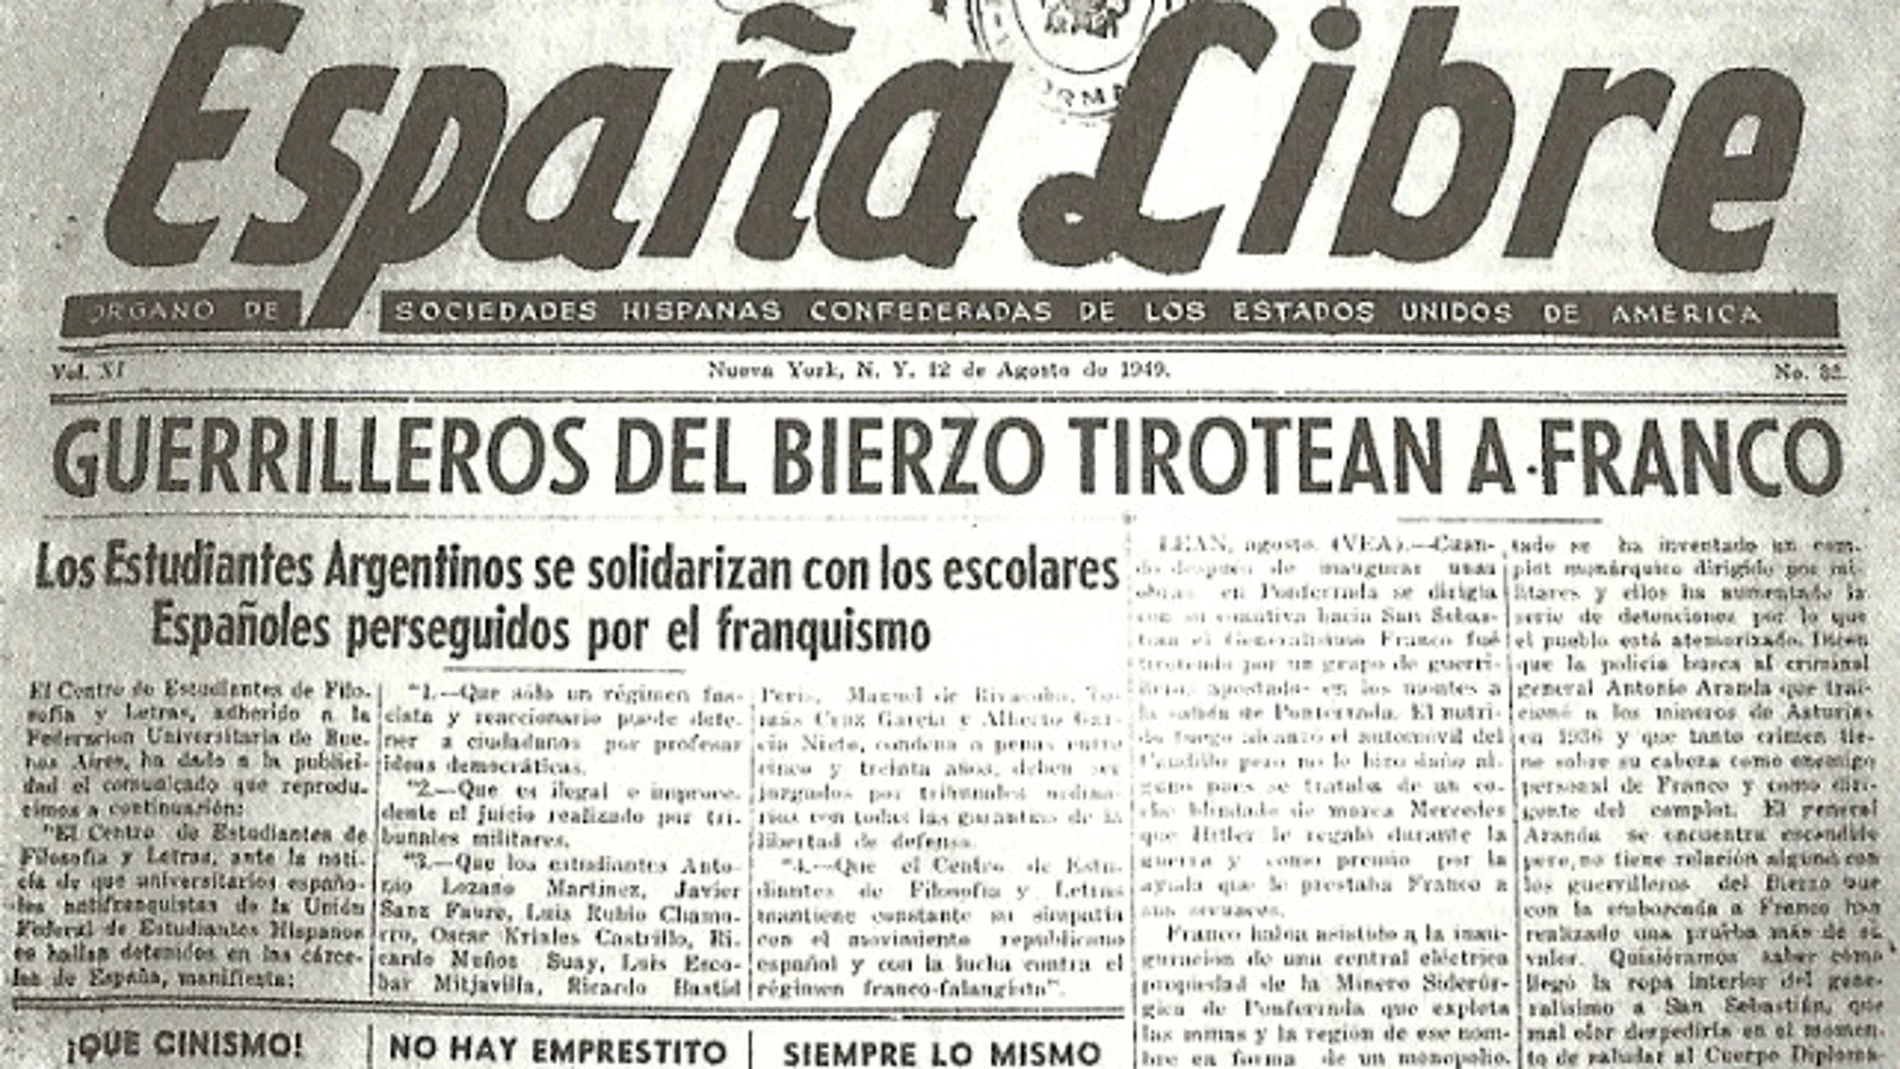 Portada del diario norteamericano "España Libre" en la que se hace alusión al atentado a Franco del 28 de julio del 49